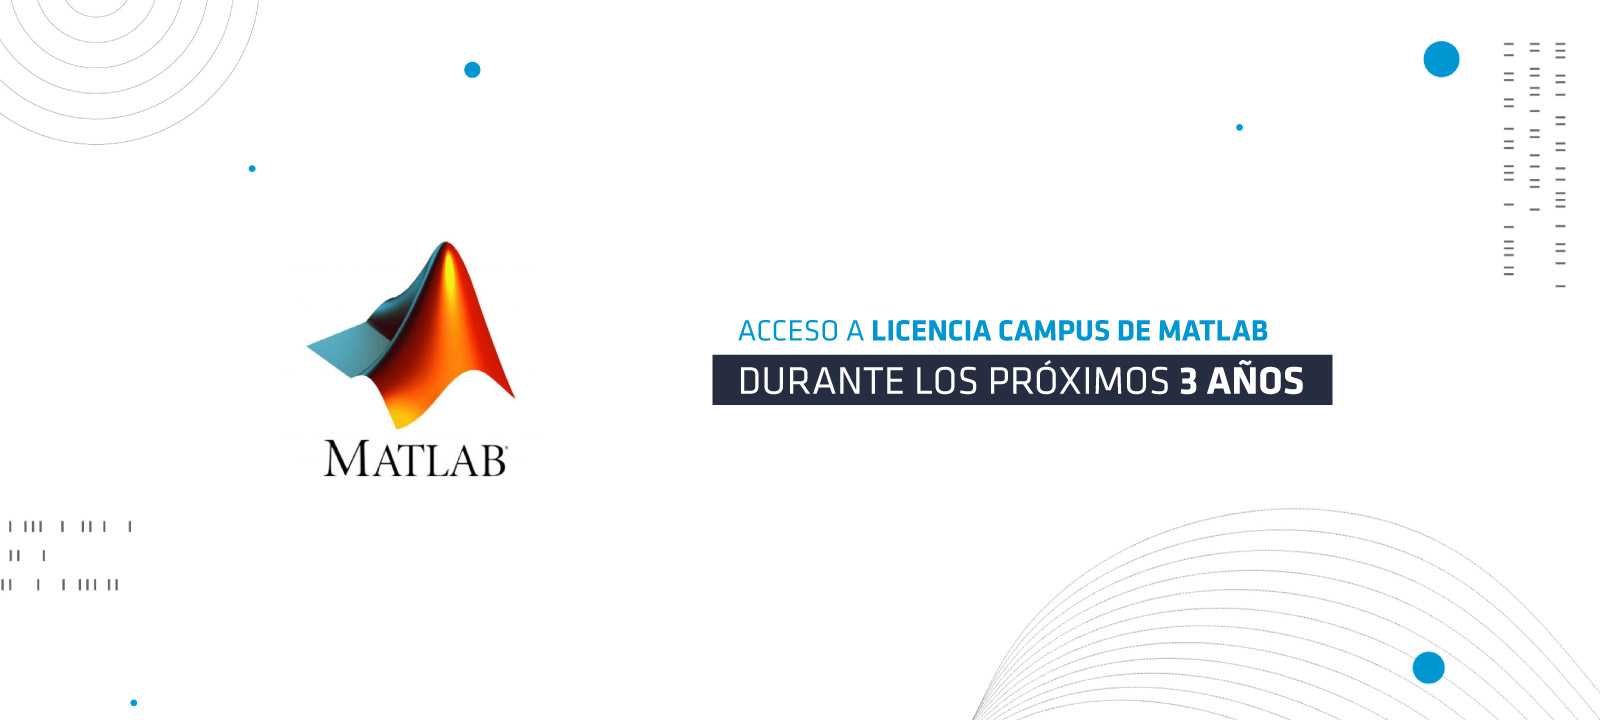 Licencia Campus de Matlab para la Universidad de los Andes por 3 años